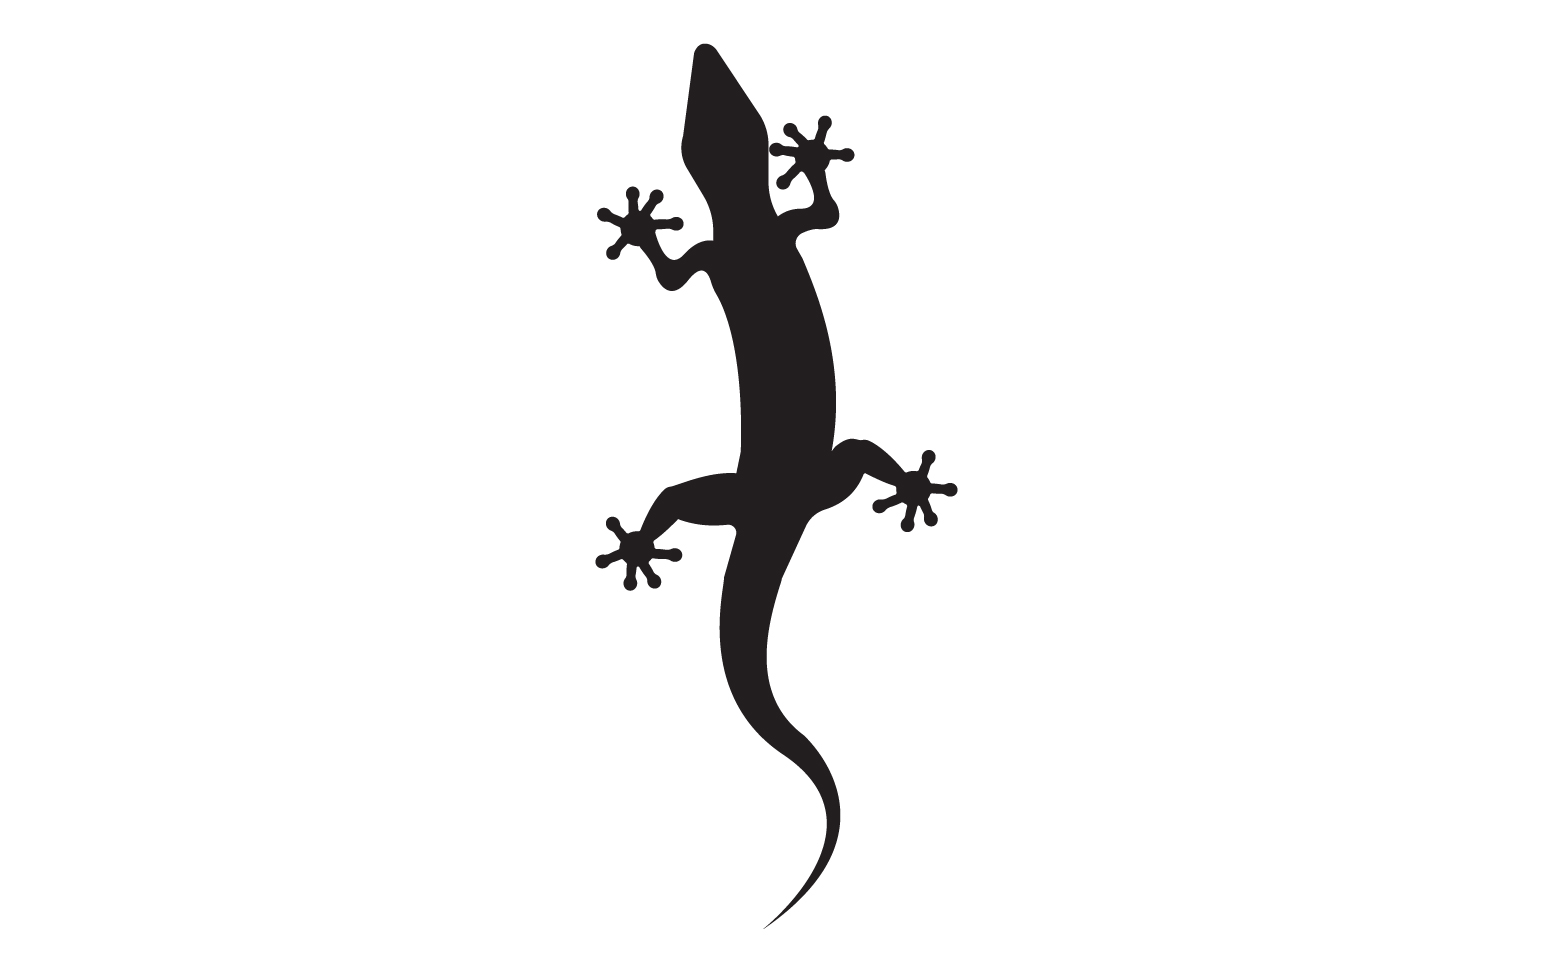 Lizard chameleon home lizard logo v47